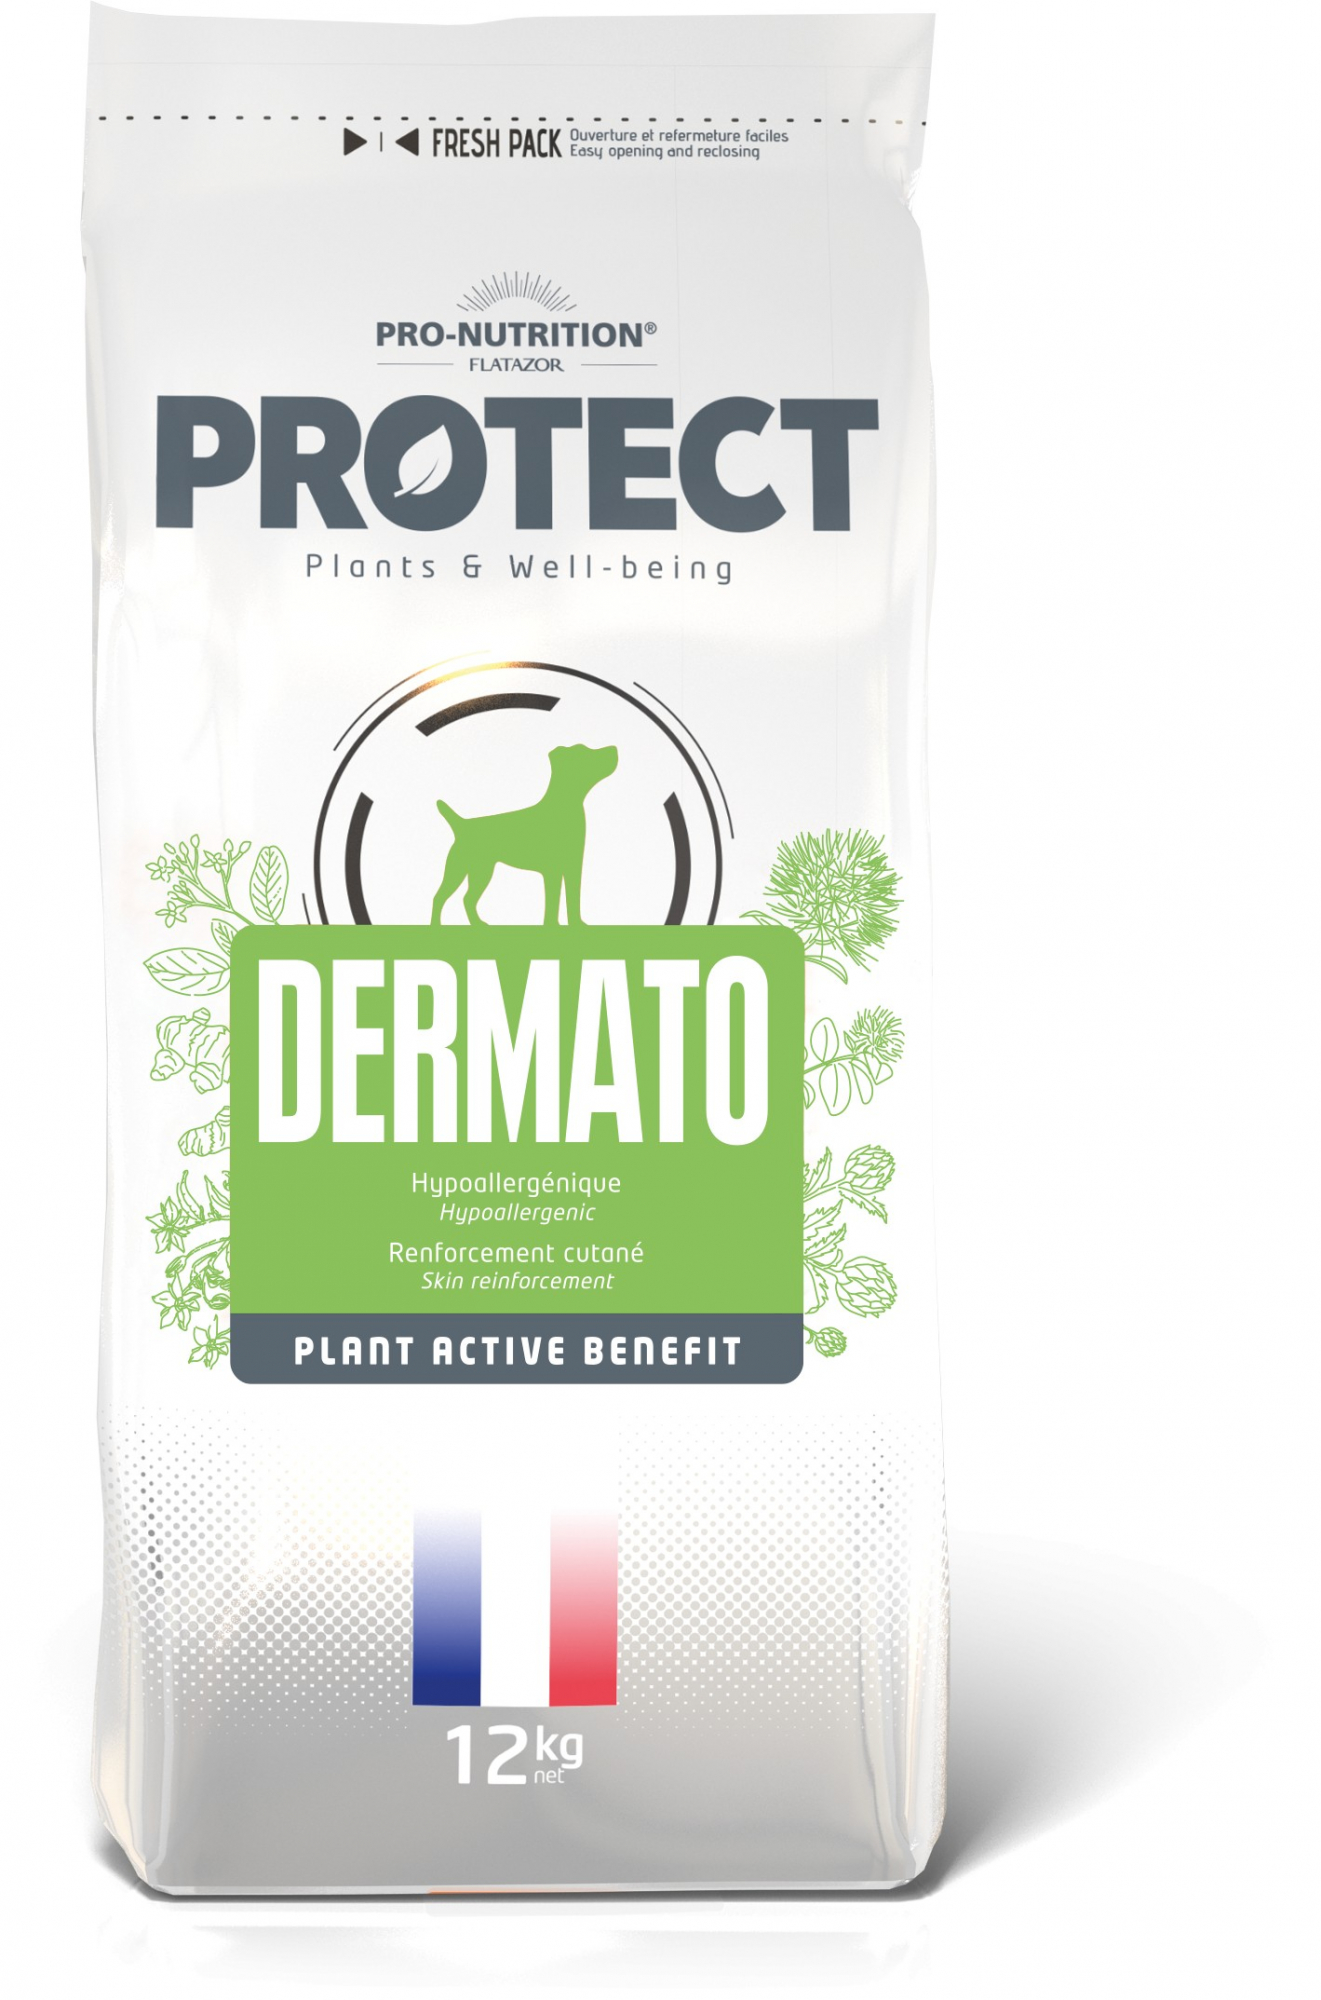 PRO-NUTRITION Flatazor PROTECT Dermato